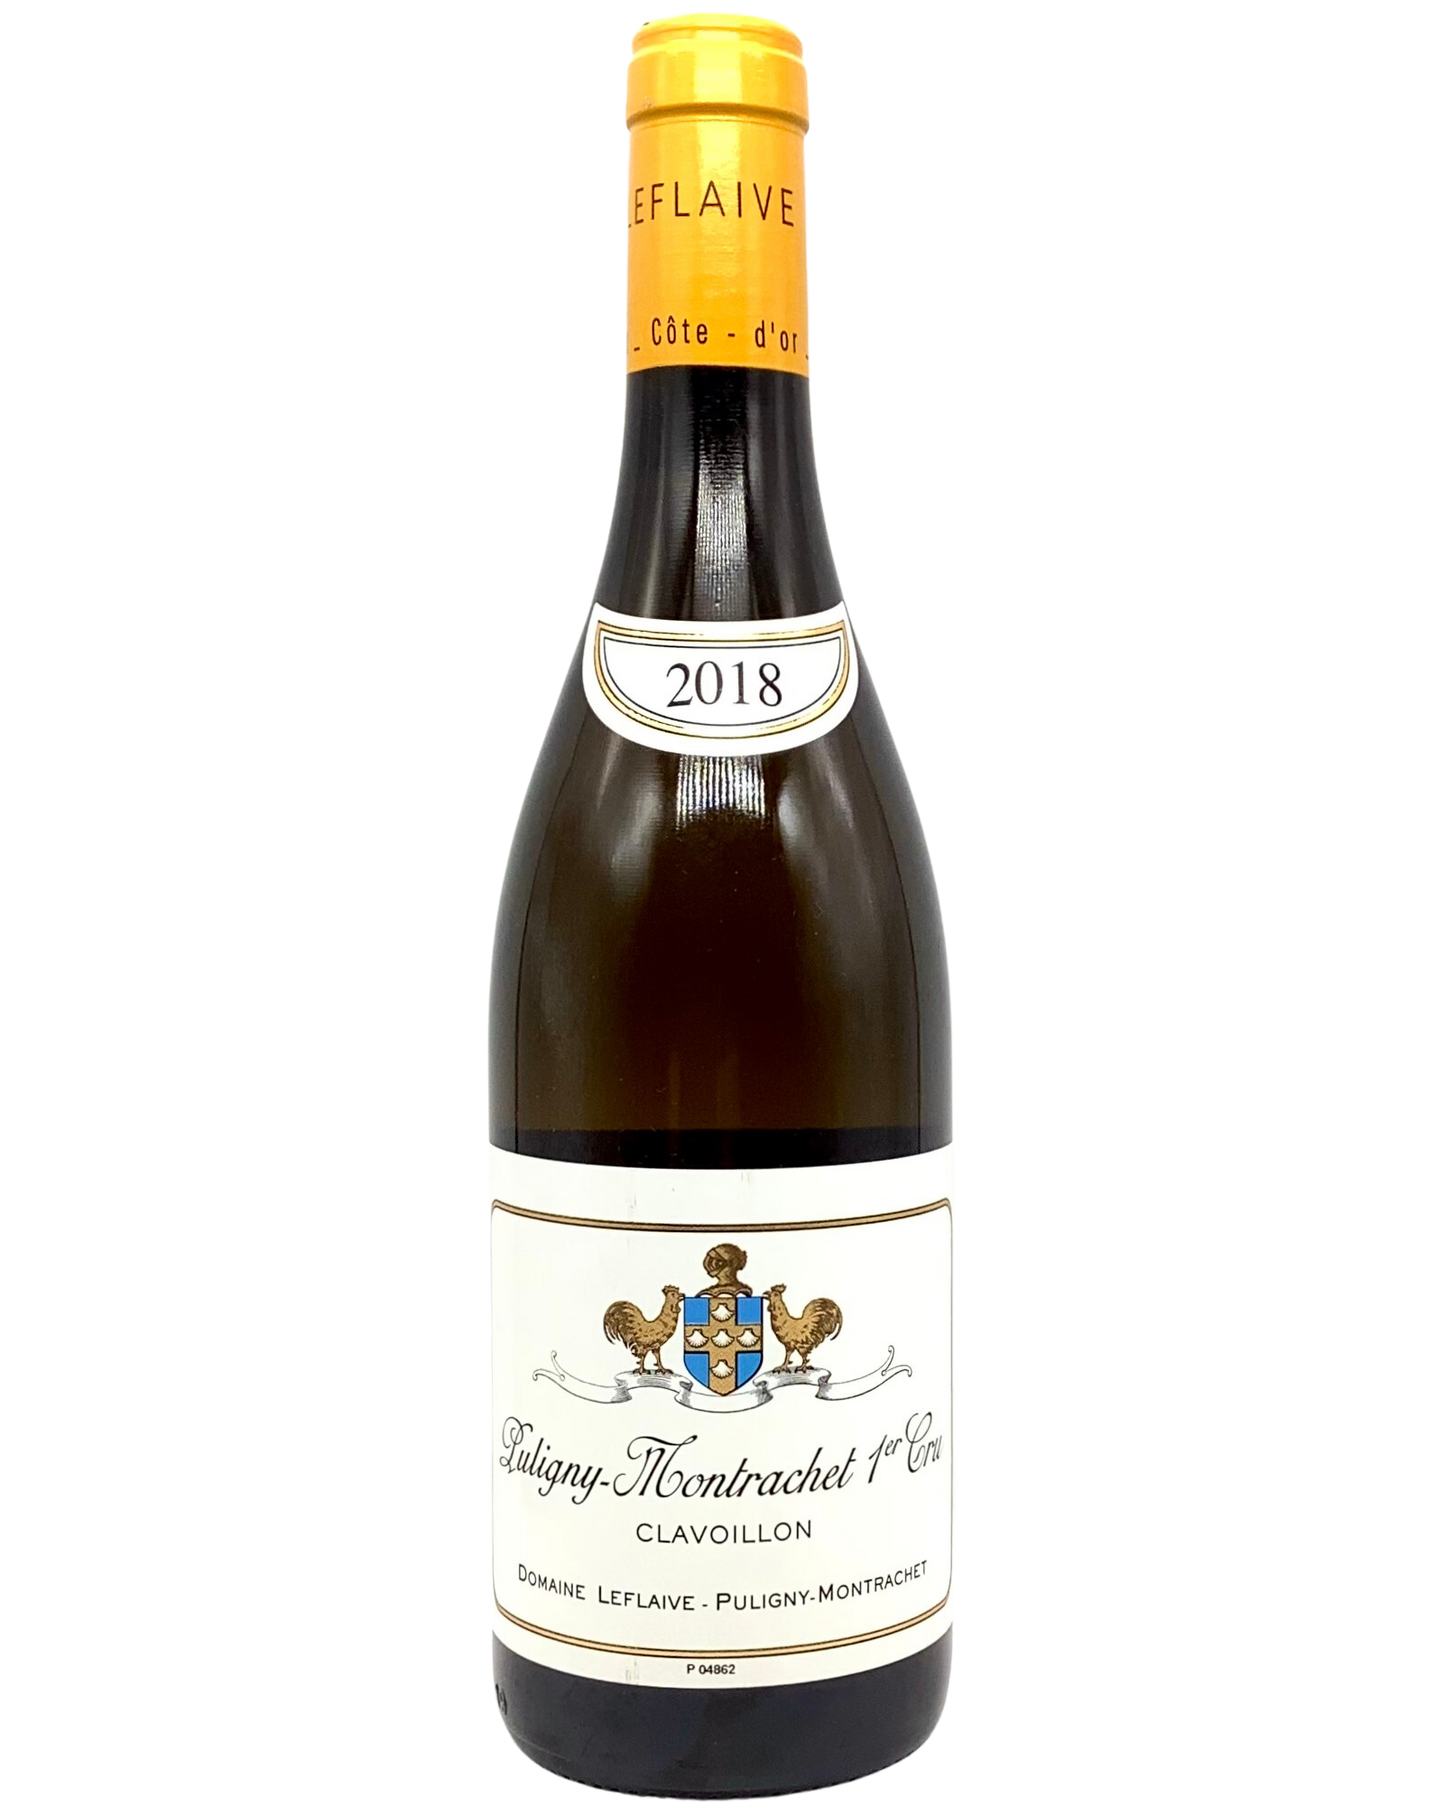 Domaine Leflaive, Chardonnay, Puligny Montrachet 1er Cru Clavoillon, Cote de Beaune 2018 biodynamic